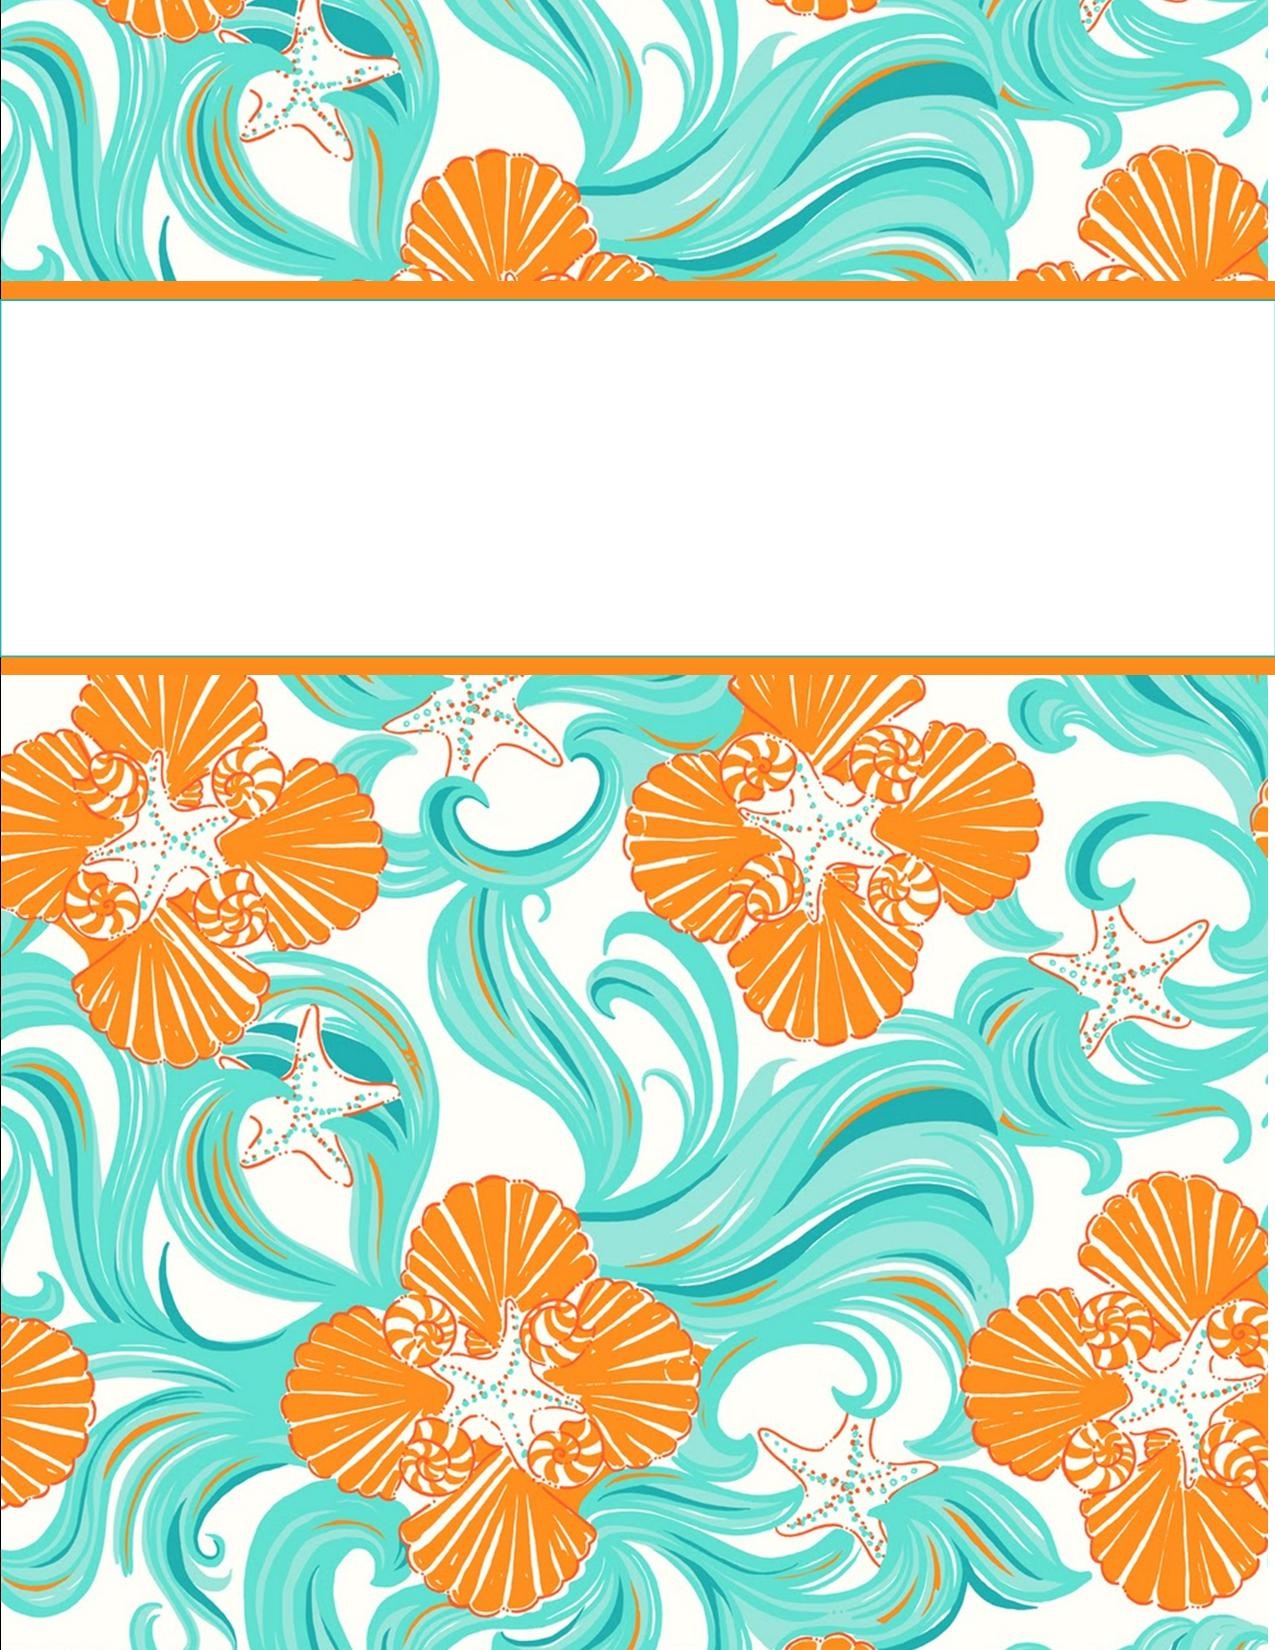 My Cute Binder Covers | Happily Hope - Cute Free Printable Binder Covers